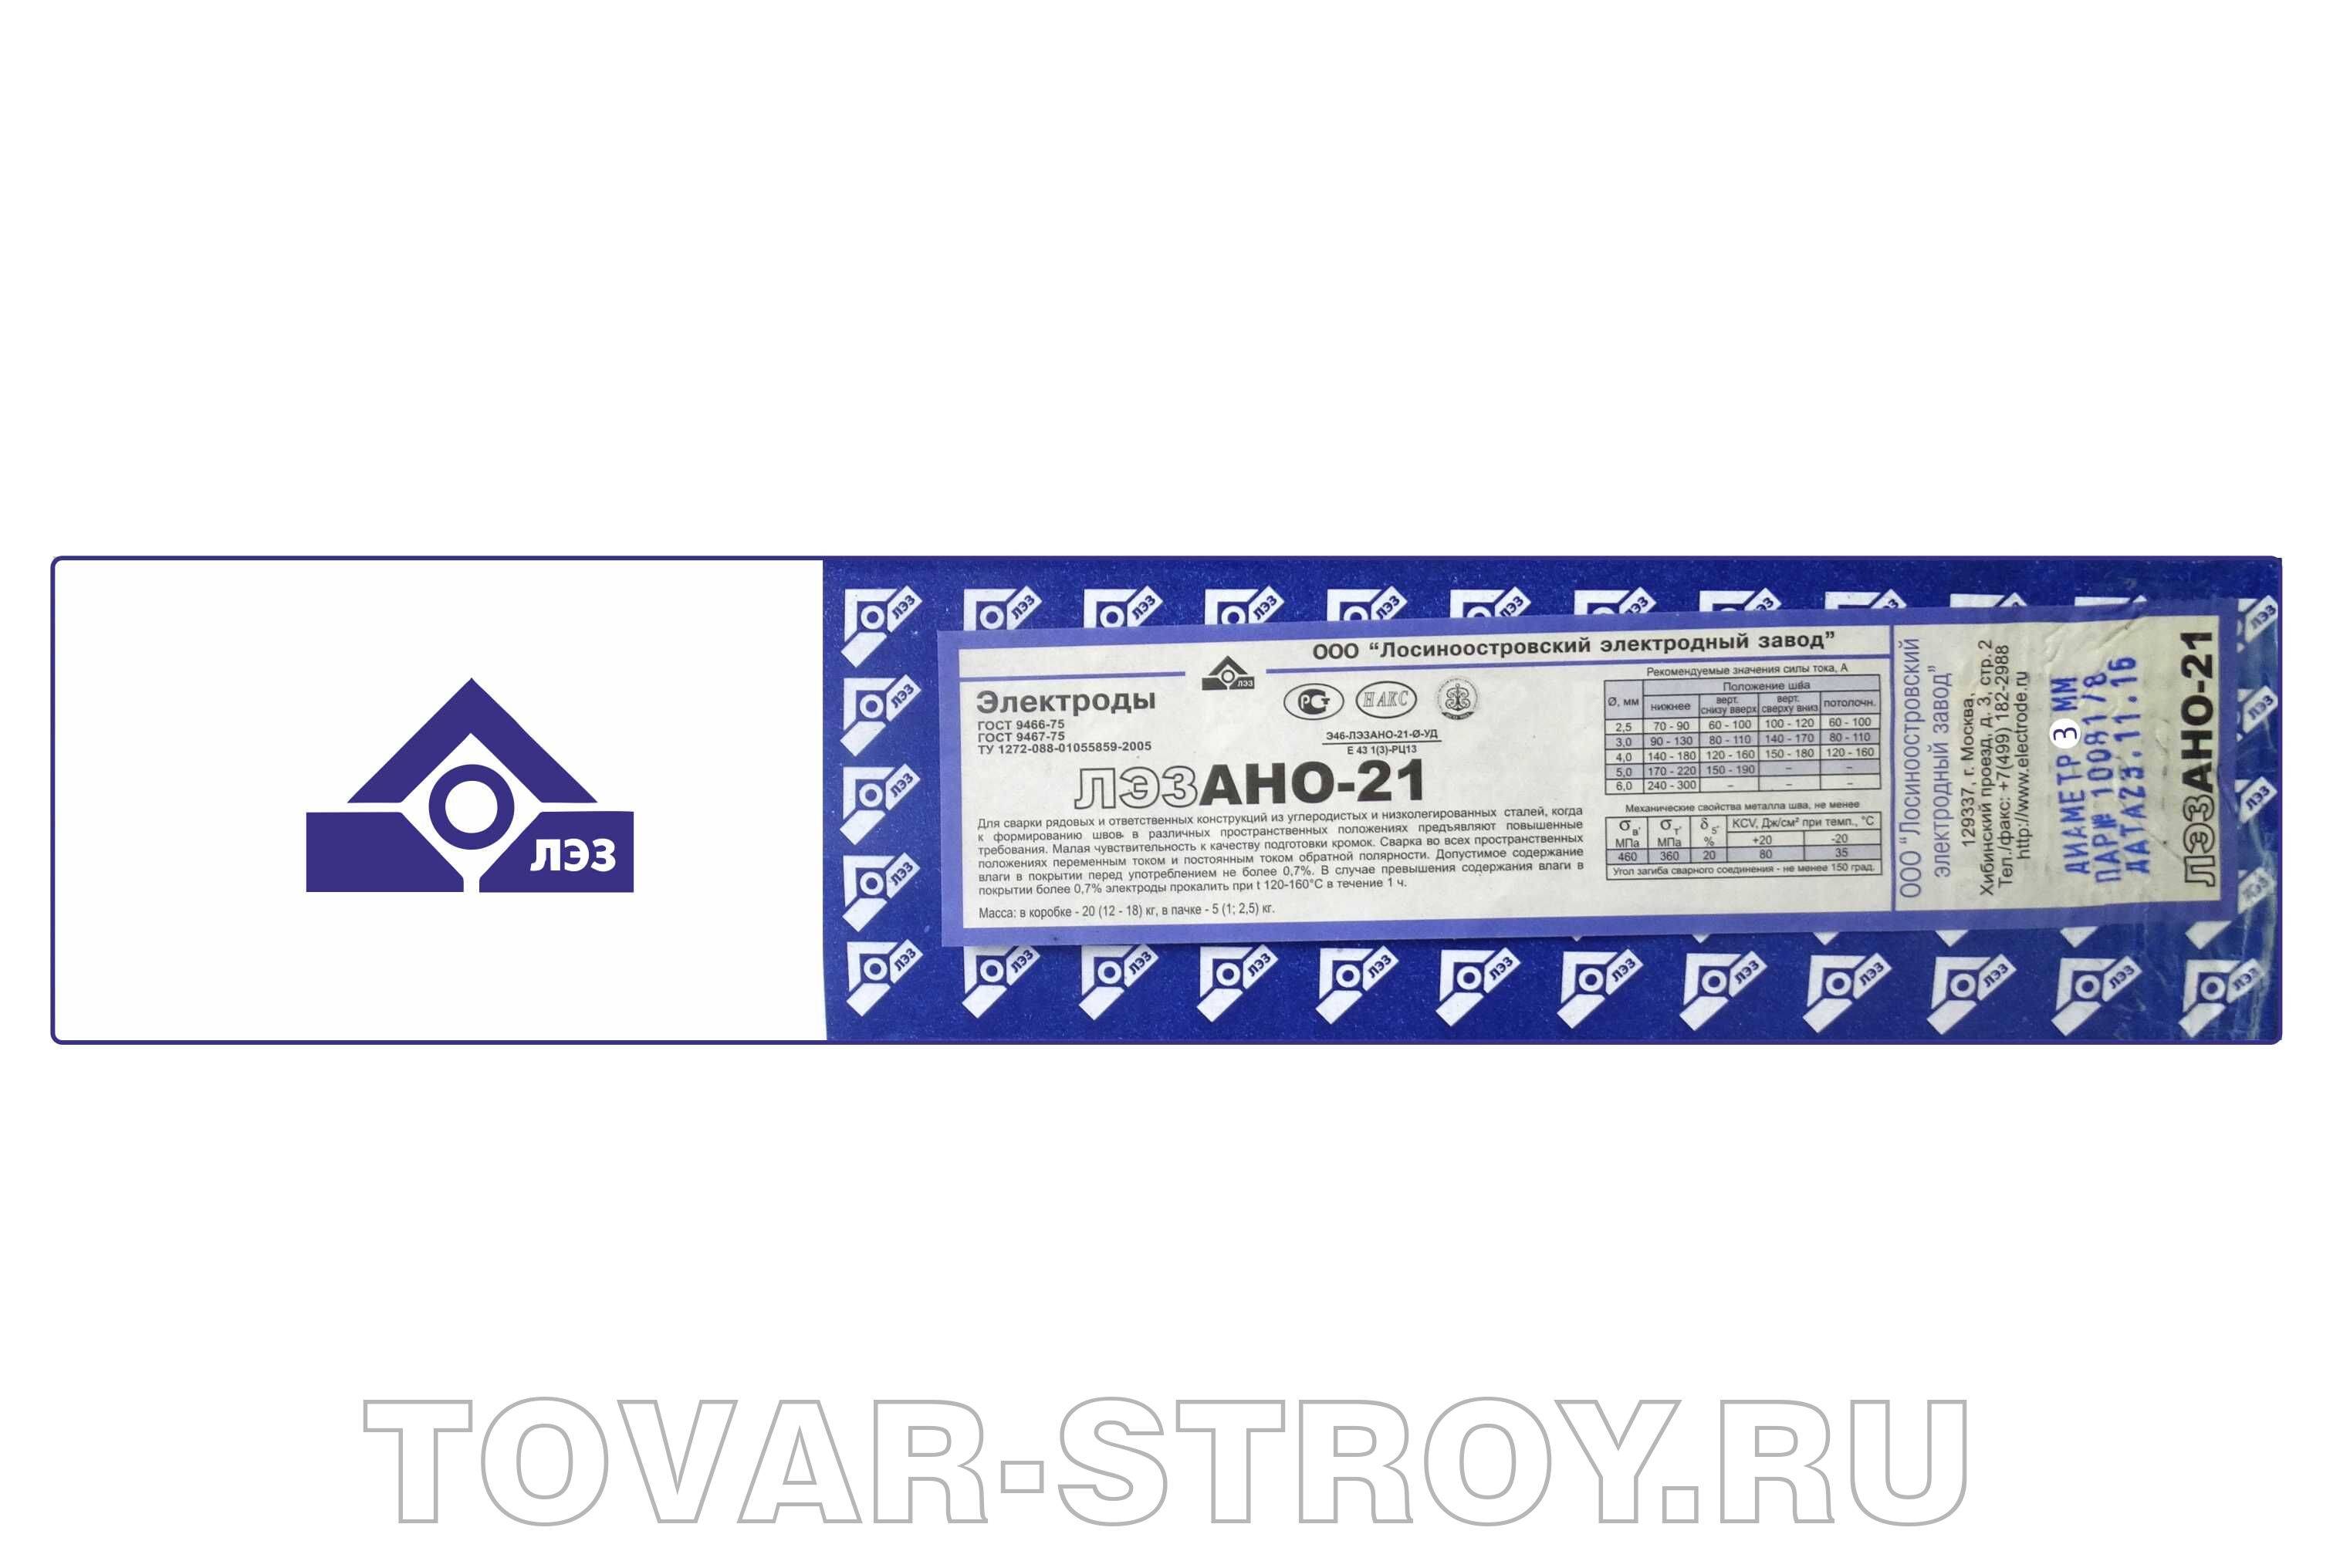 Сварочные электроды марки ано-21 — характеристики и особенности